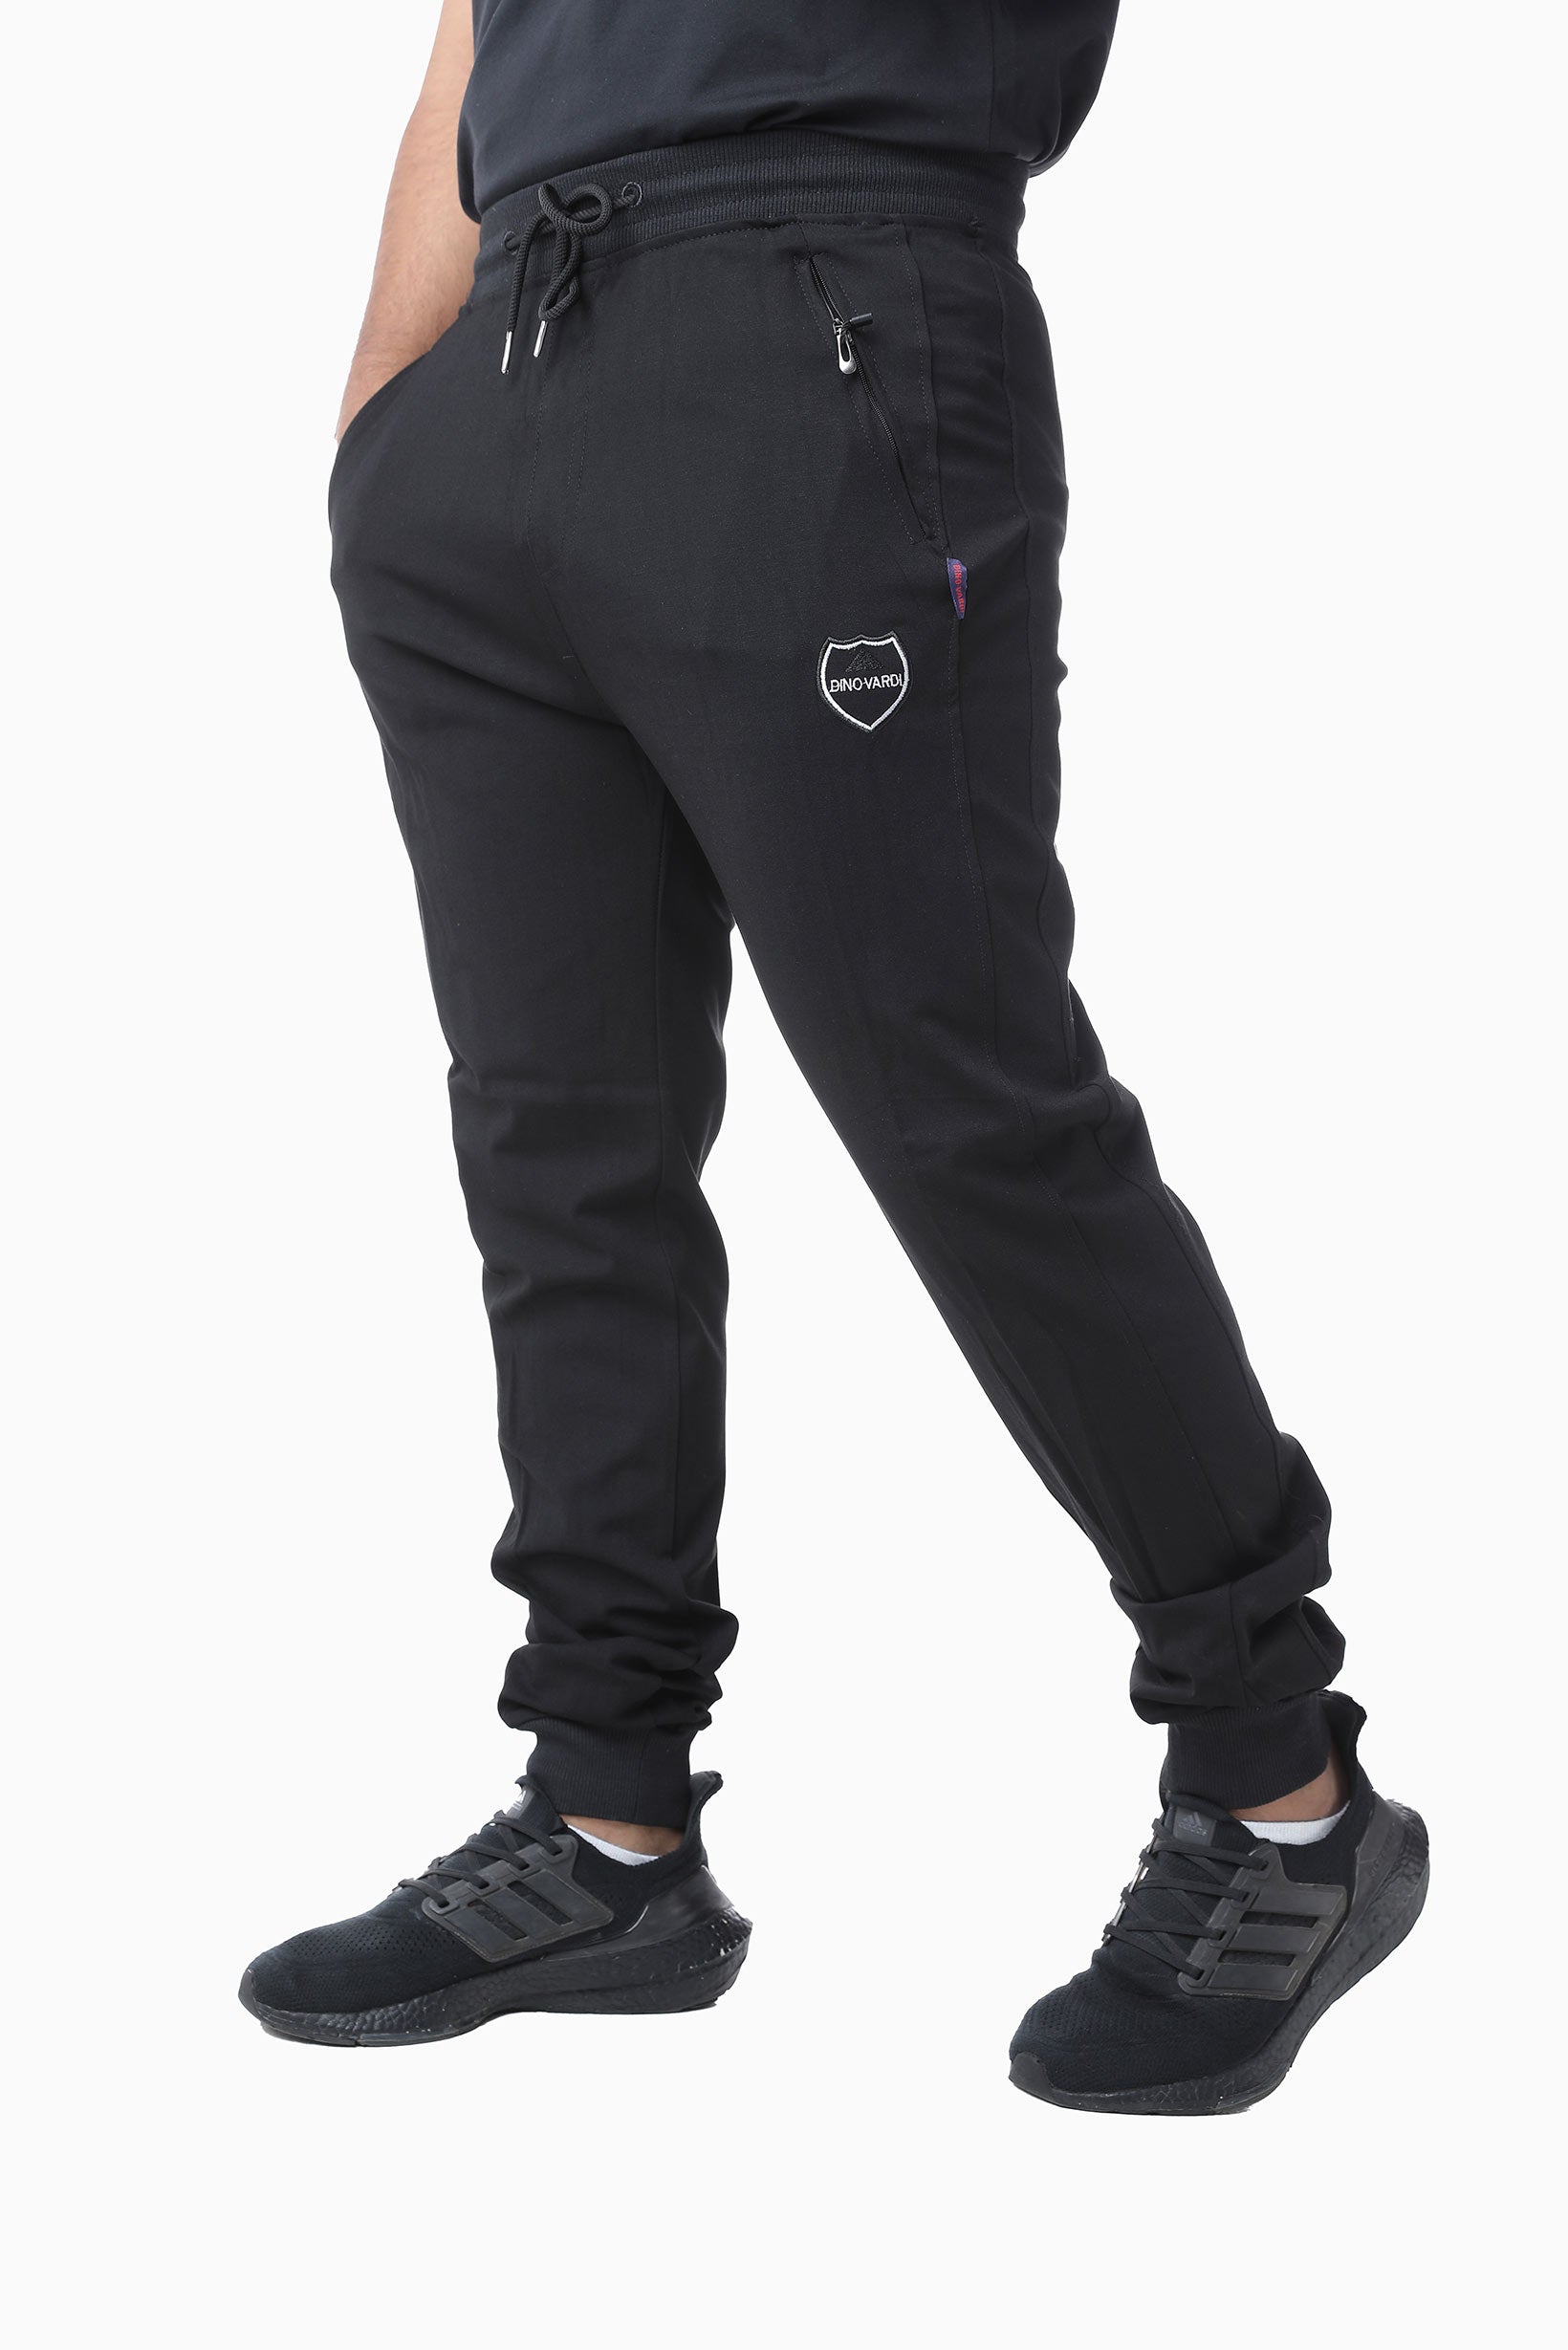 Zipper mens sports pants BLACK